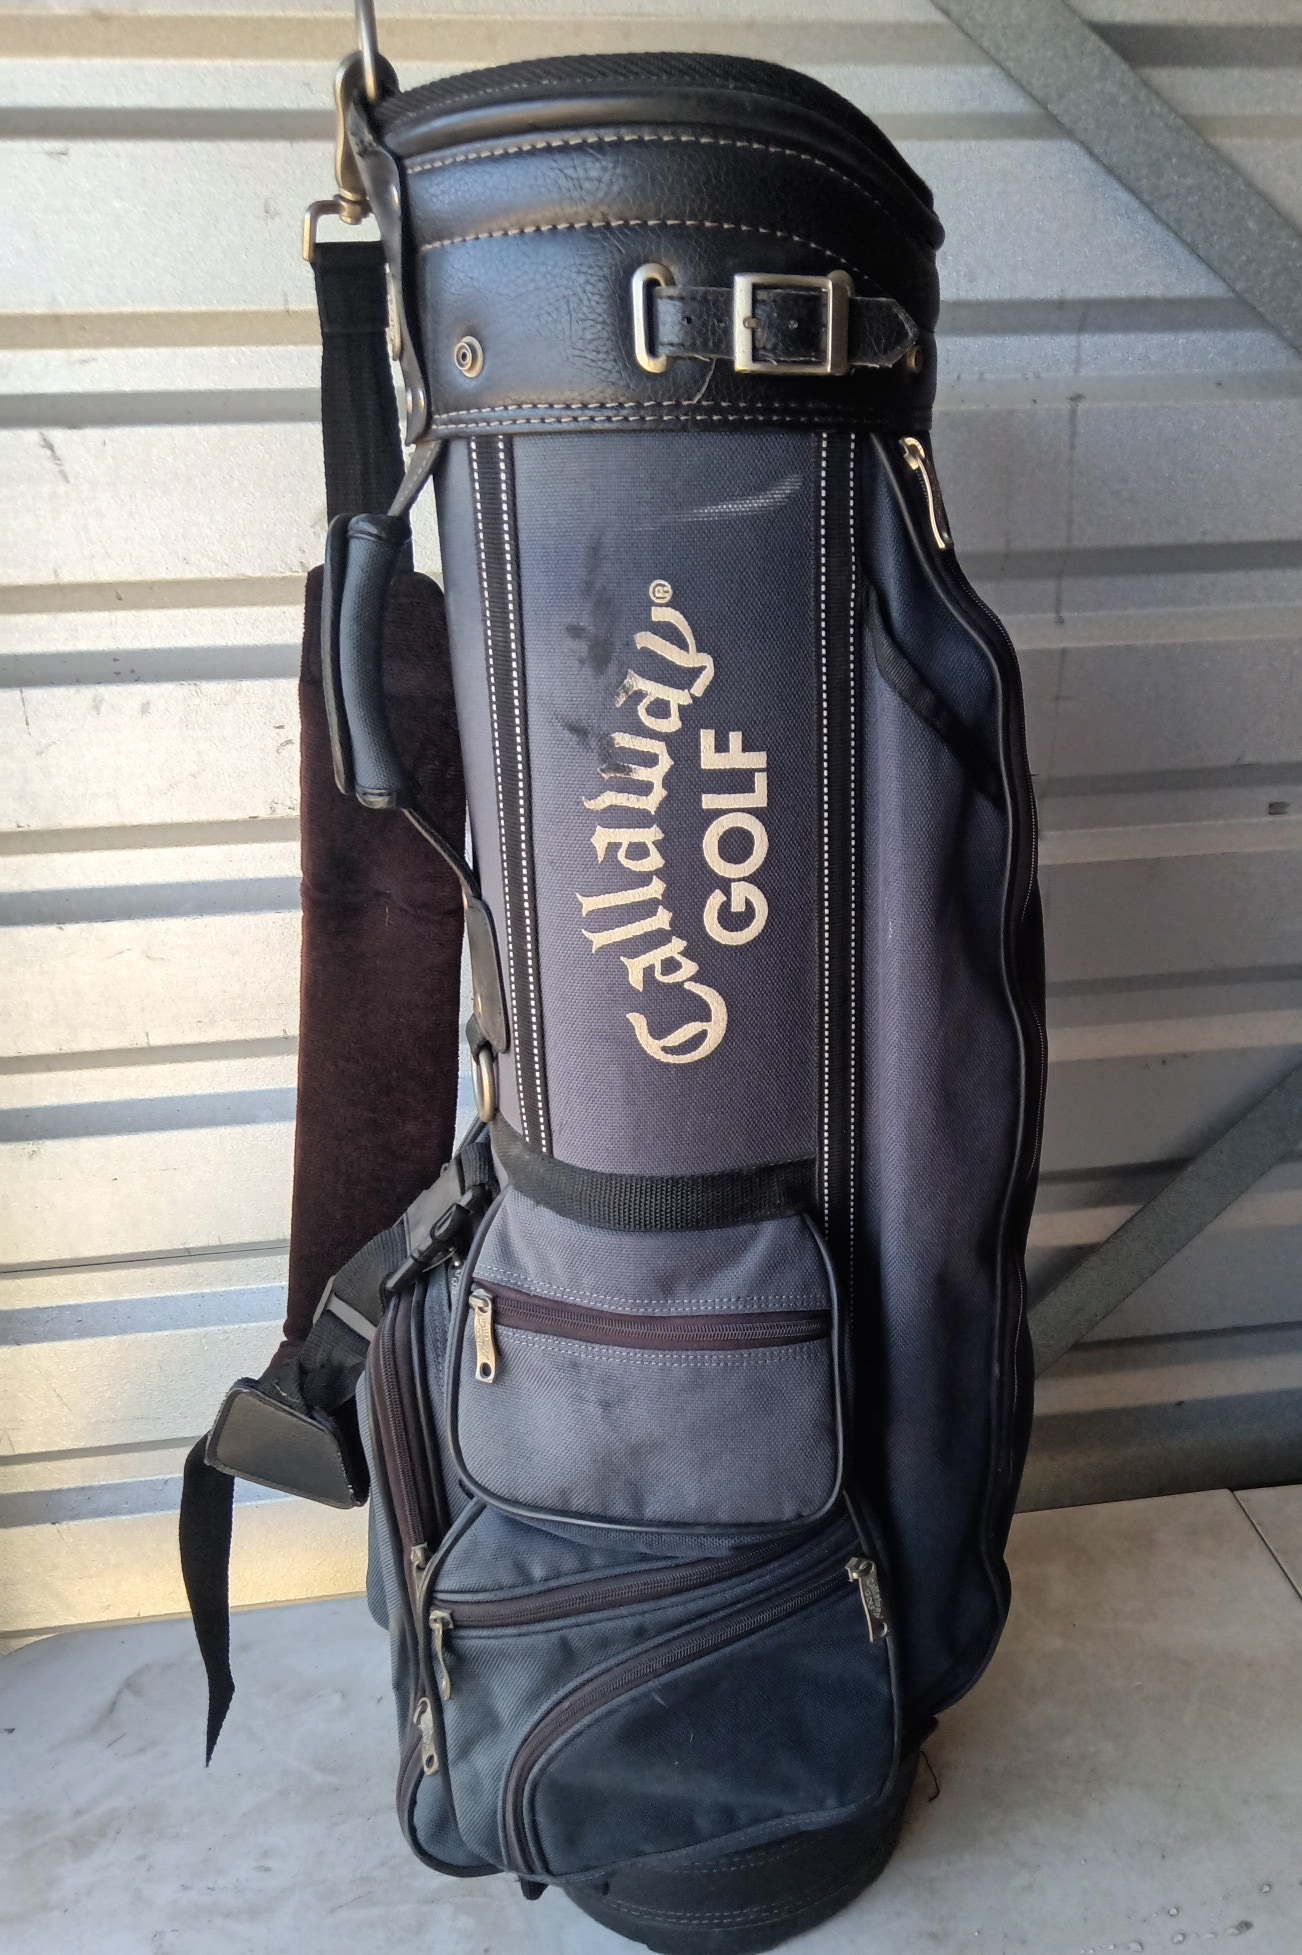 Vintage Callaway Golf Cart Bag Black & Blue, 6 Way Divider, Single Carry Strap